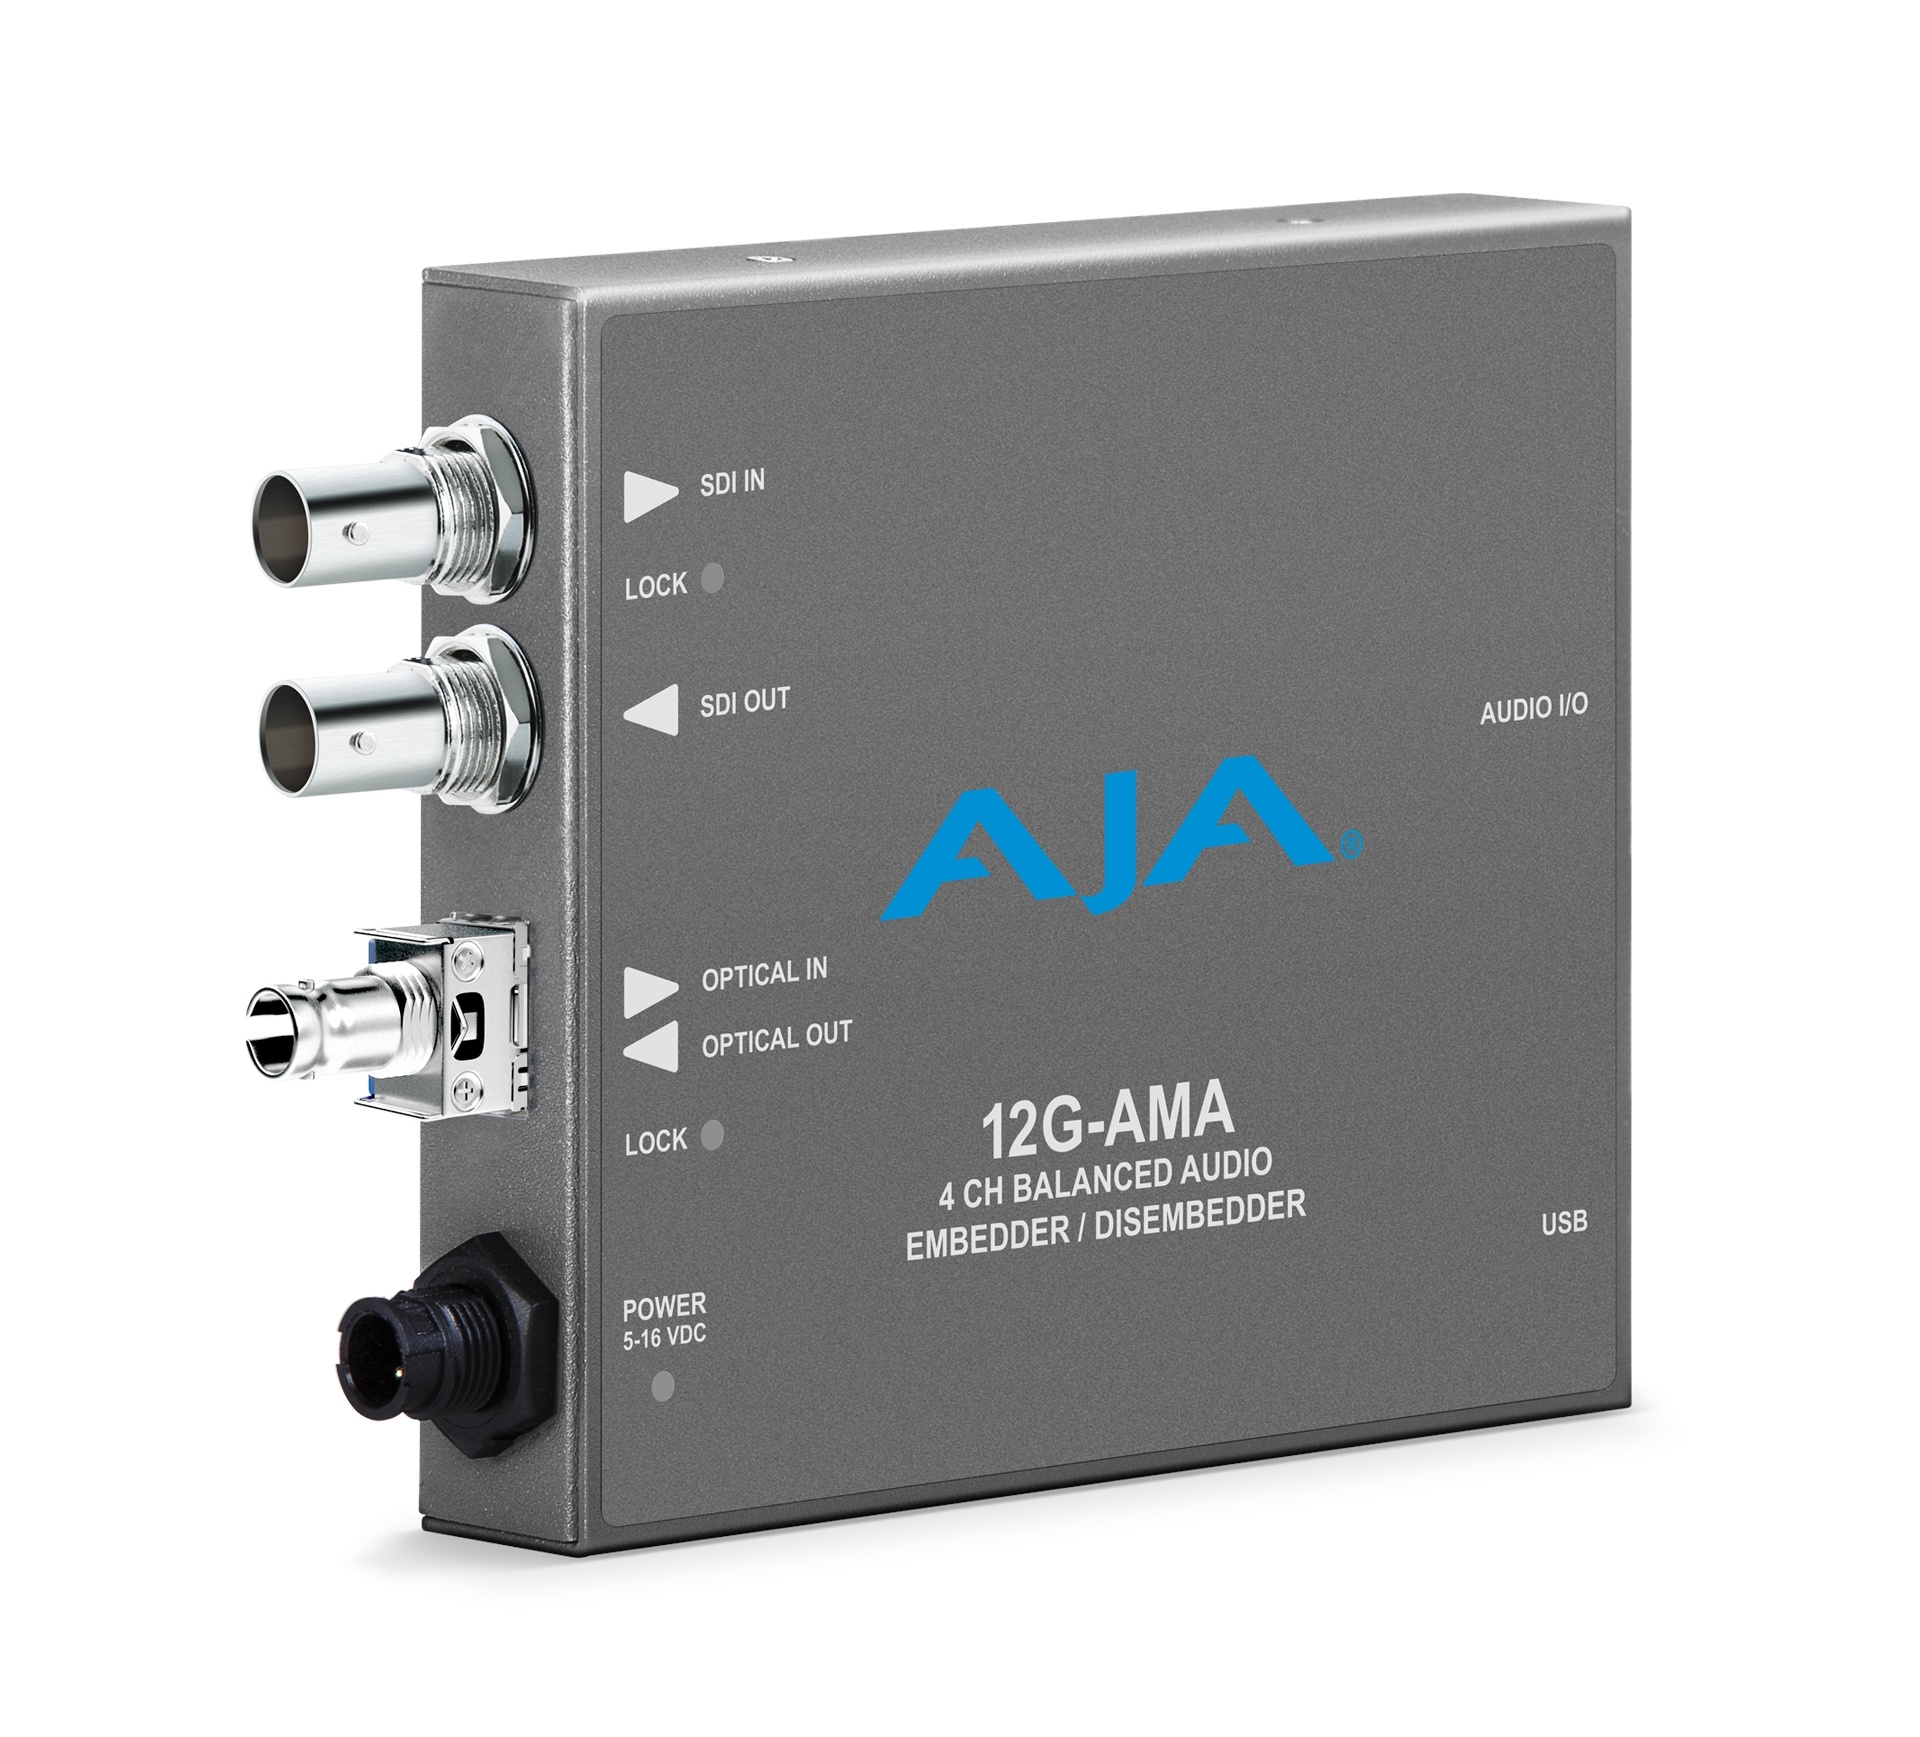 AJA 12G-SDI Input and Output up to 4K/UltraHD with ST Fiber Transmitter